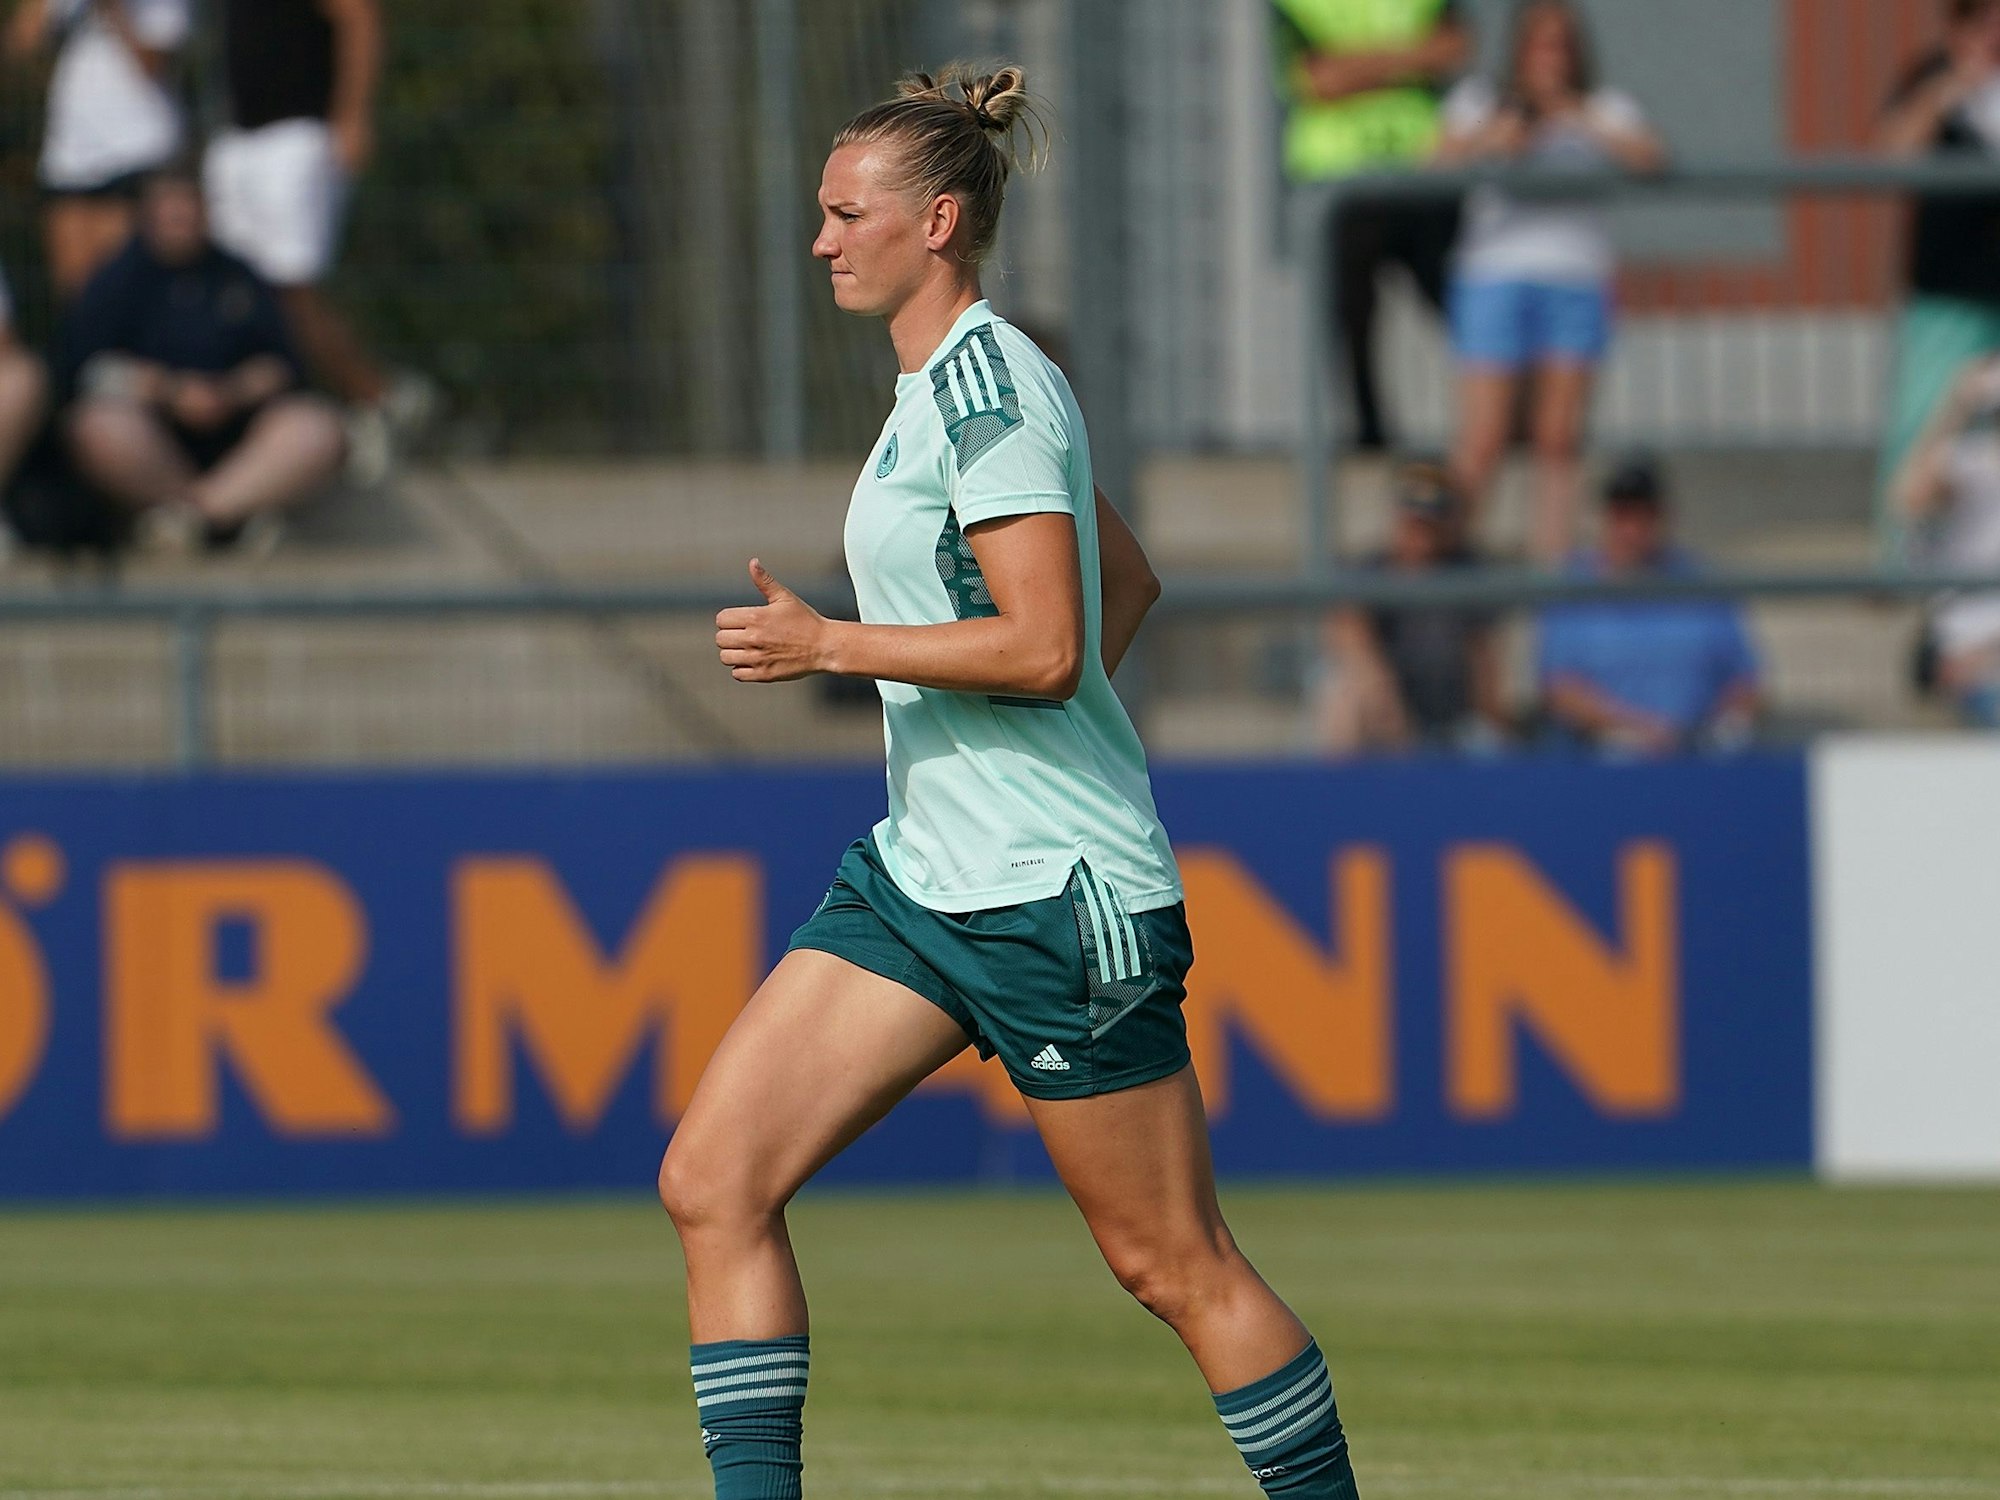 Deutschlands Nationalspielerin Alexandra Popp vom VfL Wolfsburg beim Auwärmen.